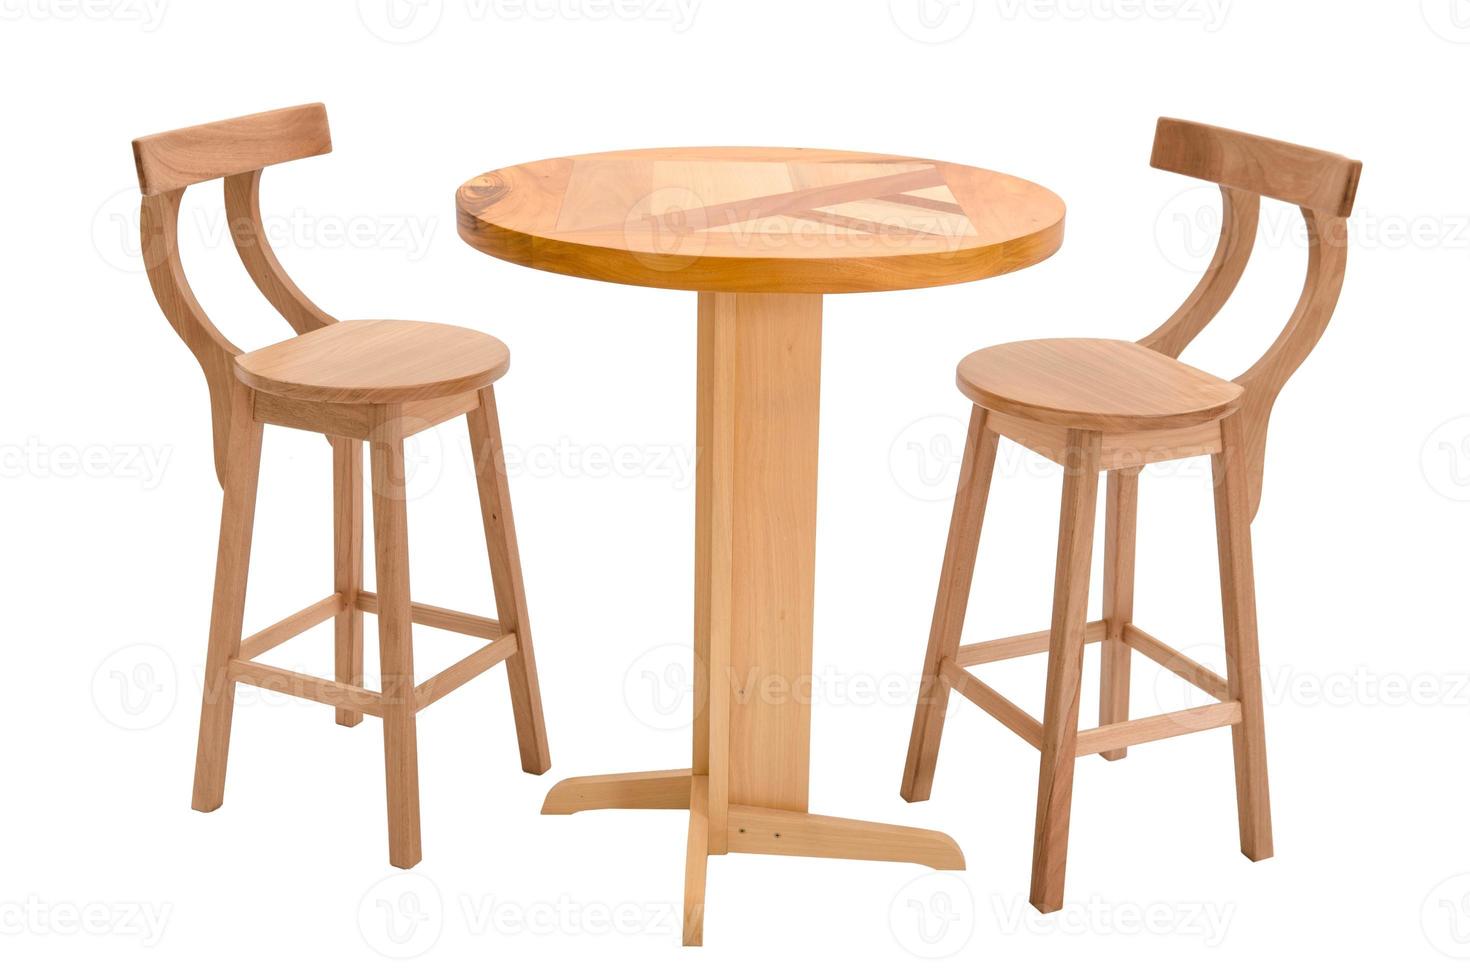 ao ar livre de madeira jantar mesa com dois fezes foto